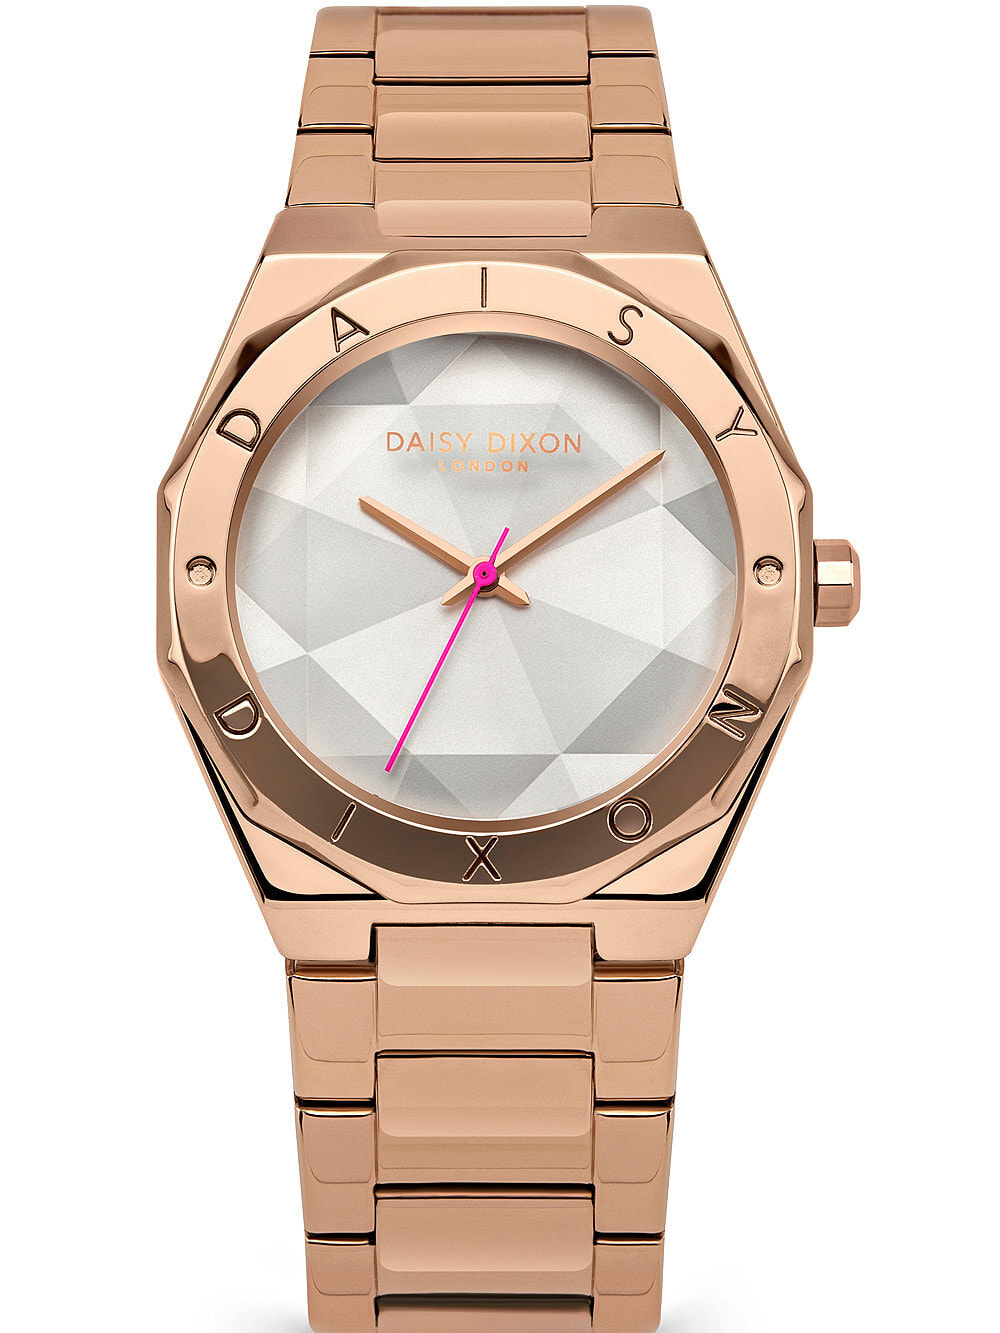 Женские наручные кварцевые часы DAISY DIXON ремешок из нержавеющей стали. Водонепроницаемость-3 АТМ. Защищенное от царапин минеральное стекло.